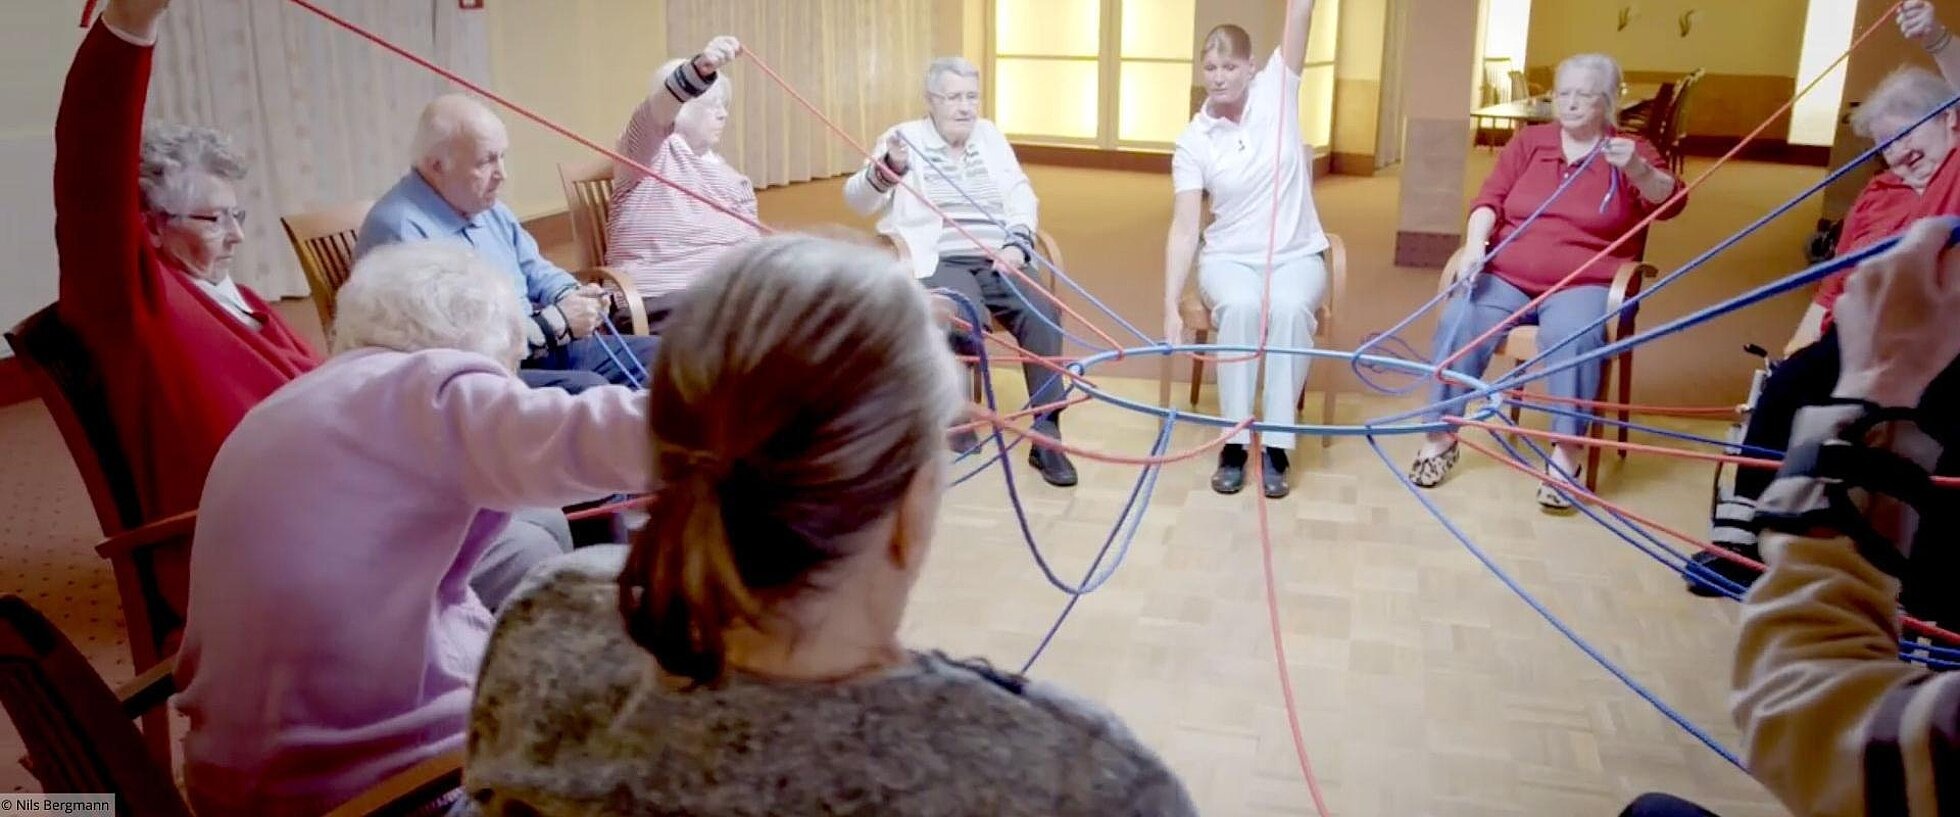 Gruppe von älteren Menschen hält mit Seilen einen Ring fest.